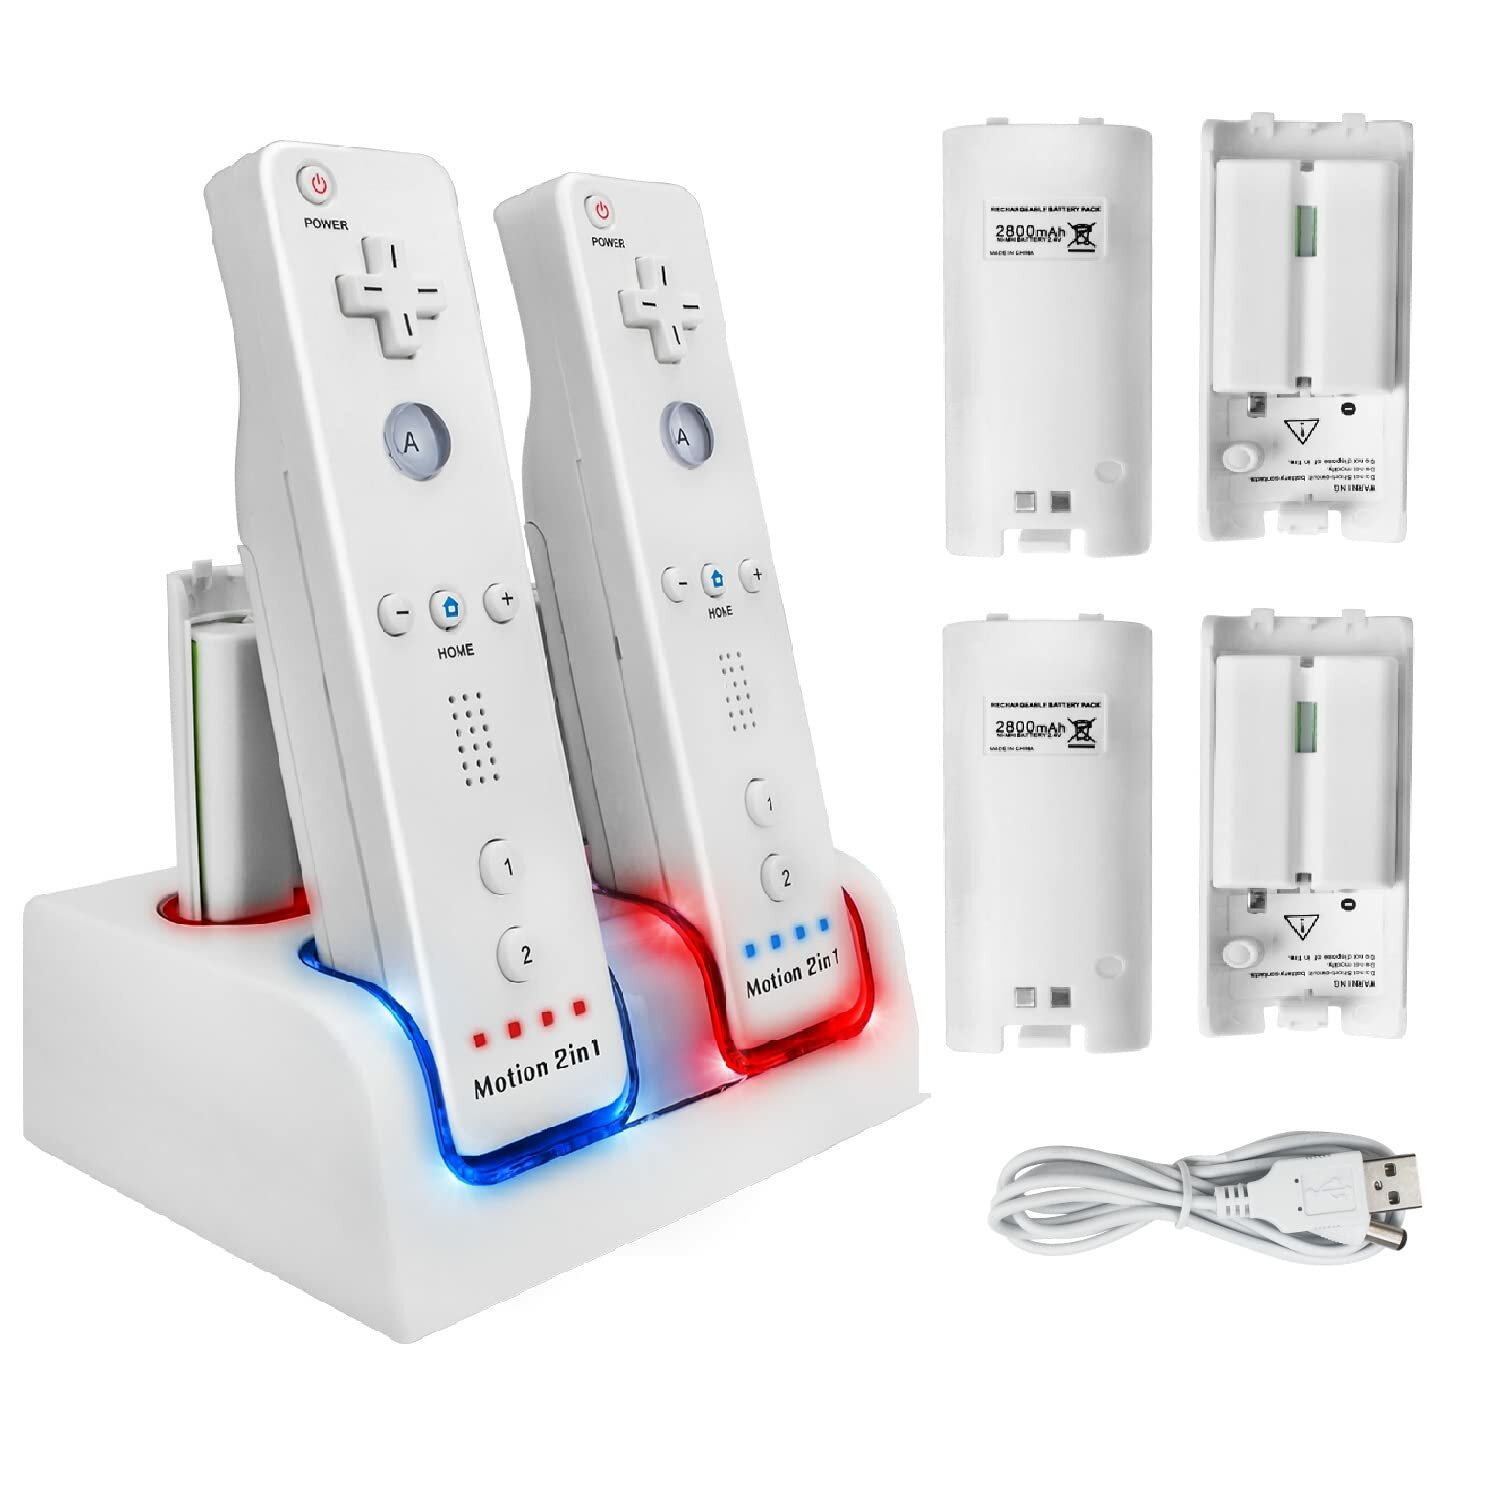 Зарядная станция Charge Dock, 4-портовое зарядное устройство для пульта дистанционного управления Wii с 4 аккумуляторами емкостью 2800 мАч